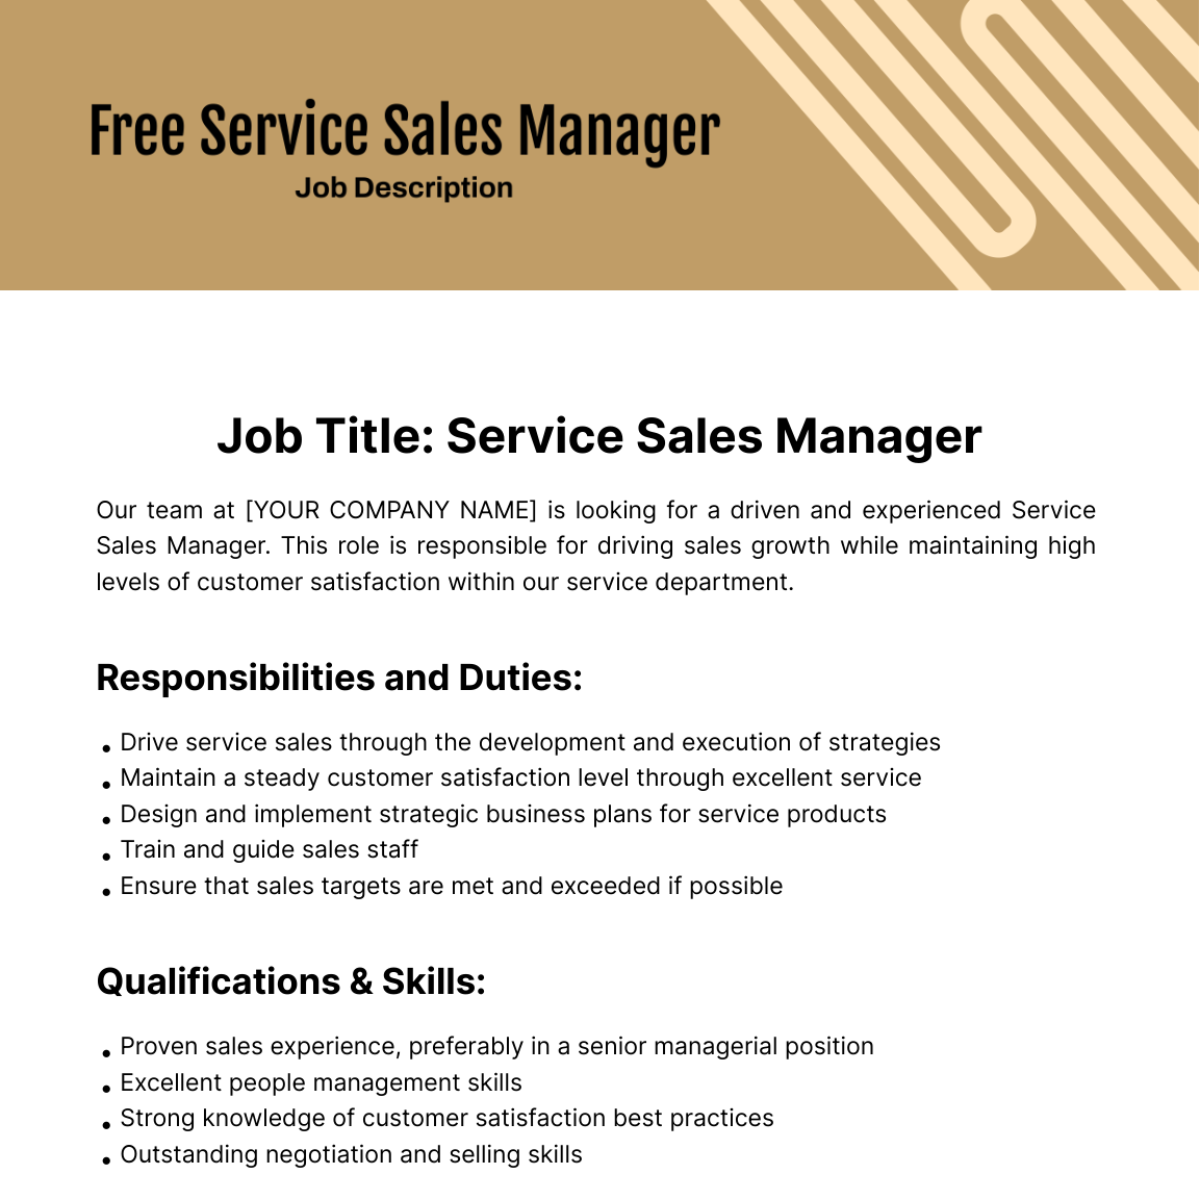 Service Sales Manager Job Description Template